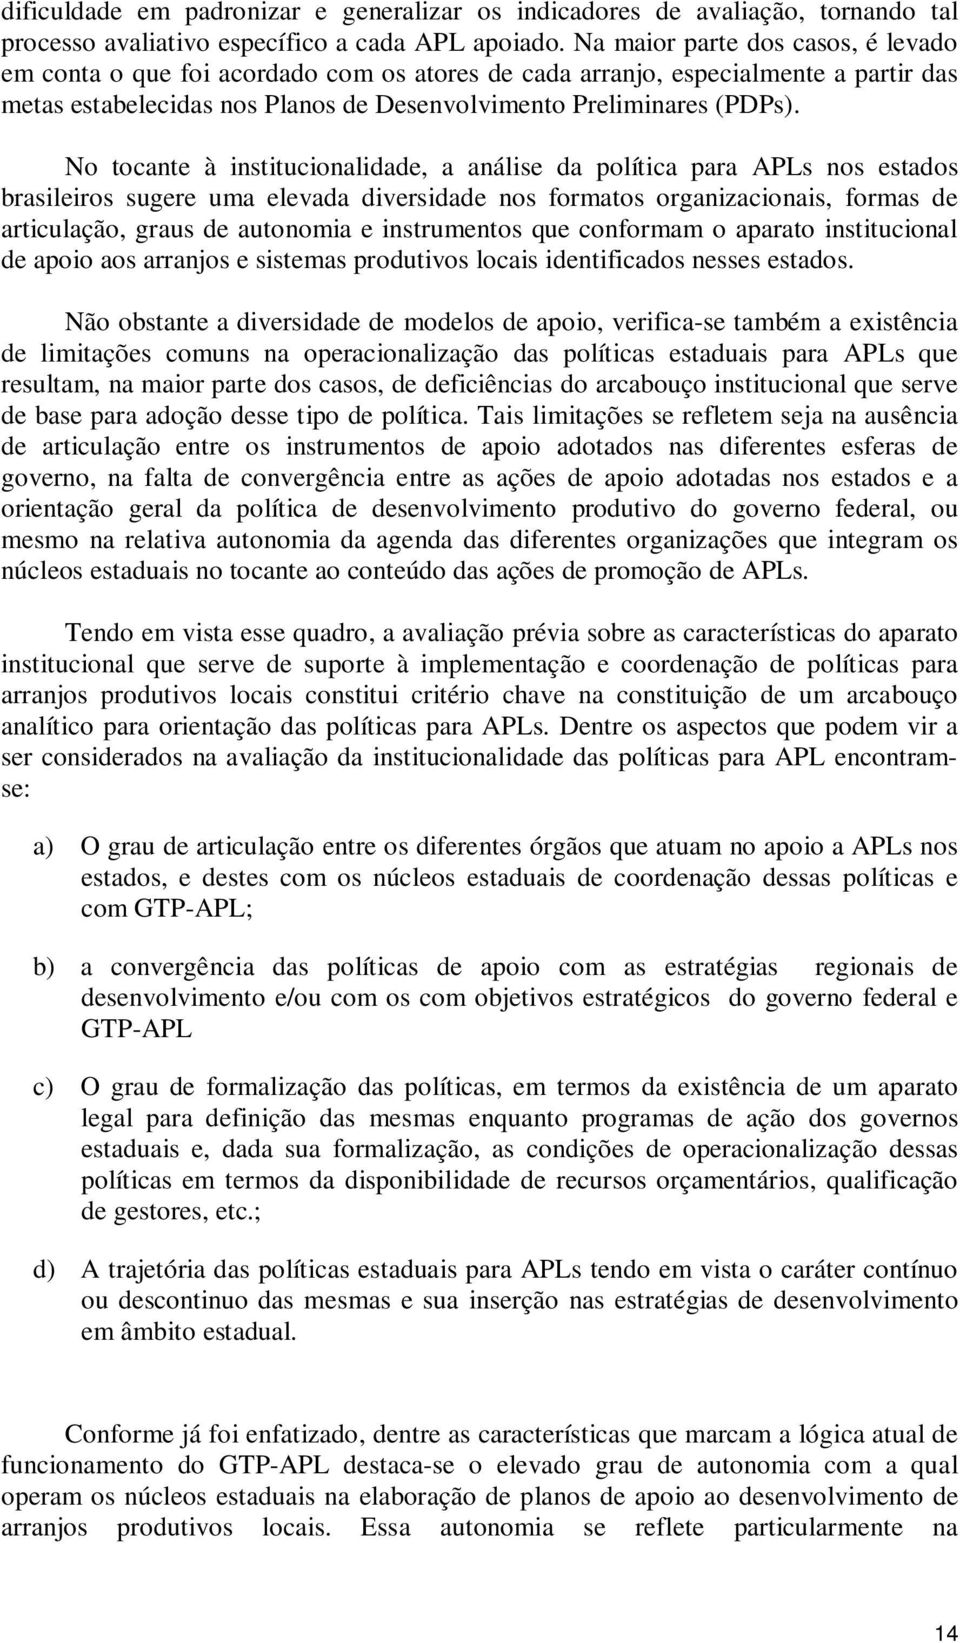 No tocante à institucionalidade, a análise da política para APLs nos estados brasileiros sugere uma elevada diversidade nos formatos organizacionais, formas de articulação, graus de autonomia e